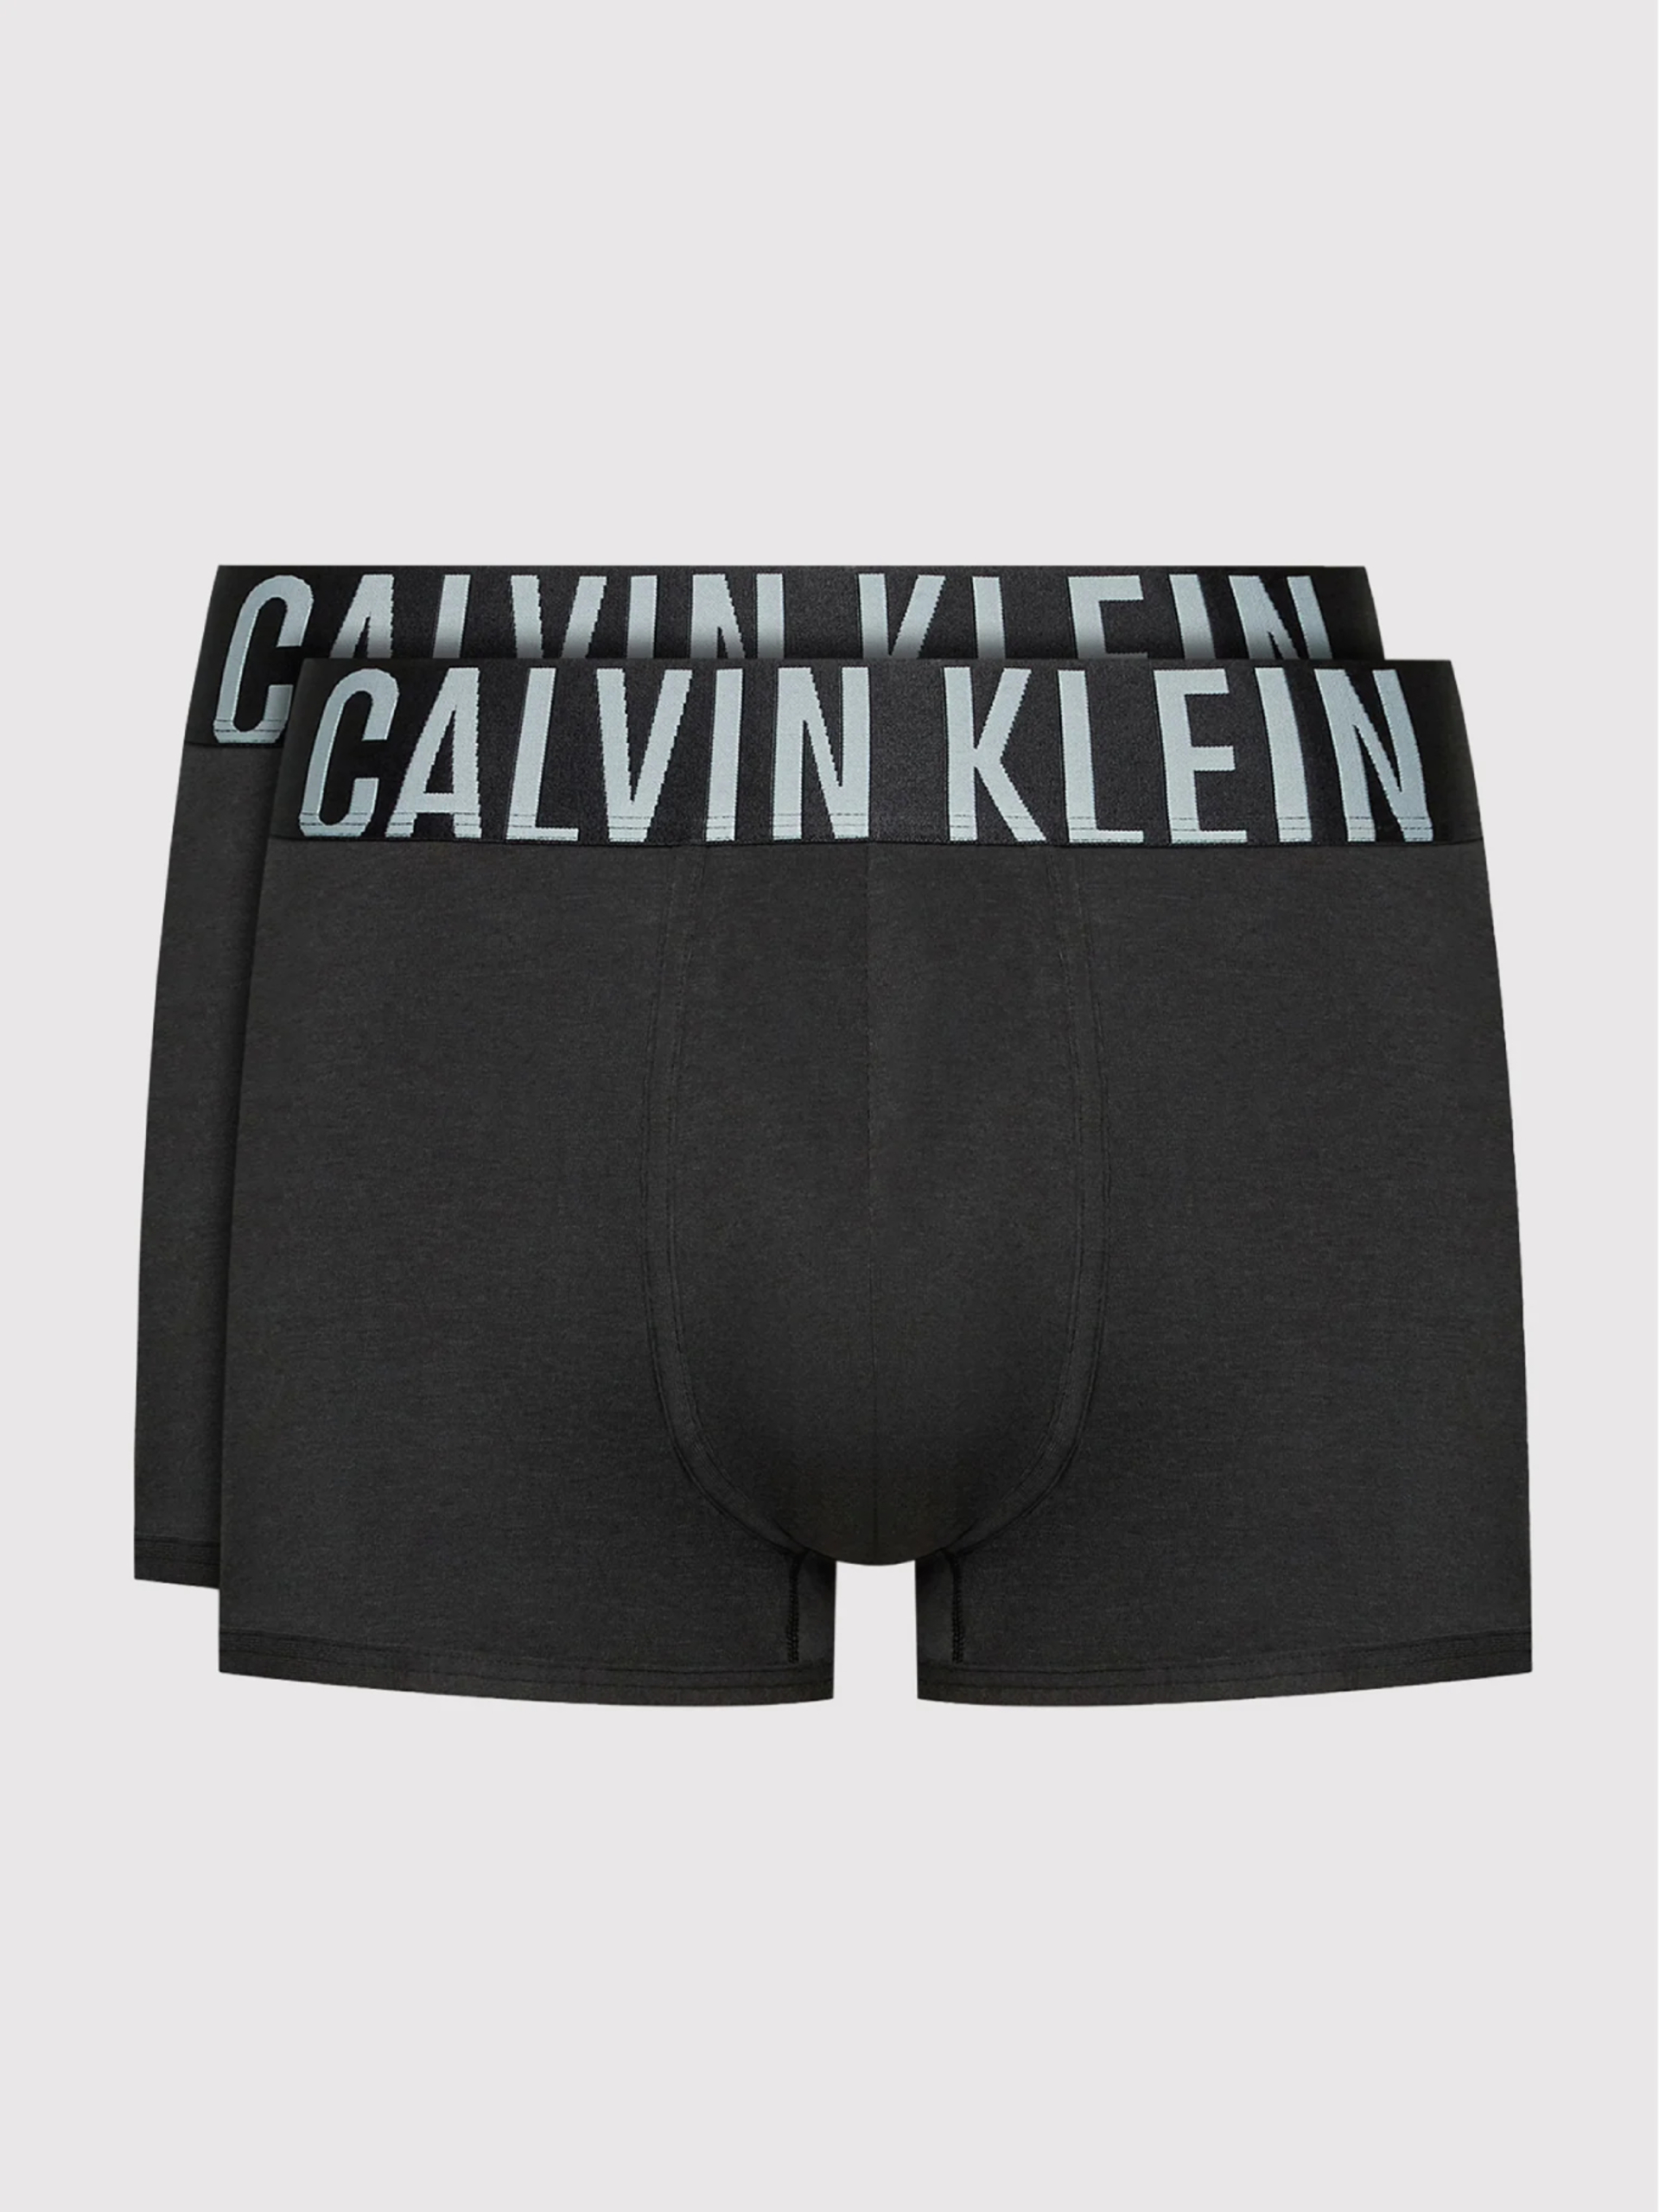 Calvin Klein pánské černé boxerky 2 pack - M (UB1)